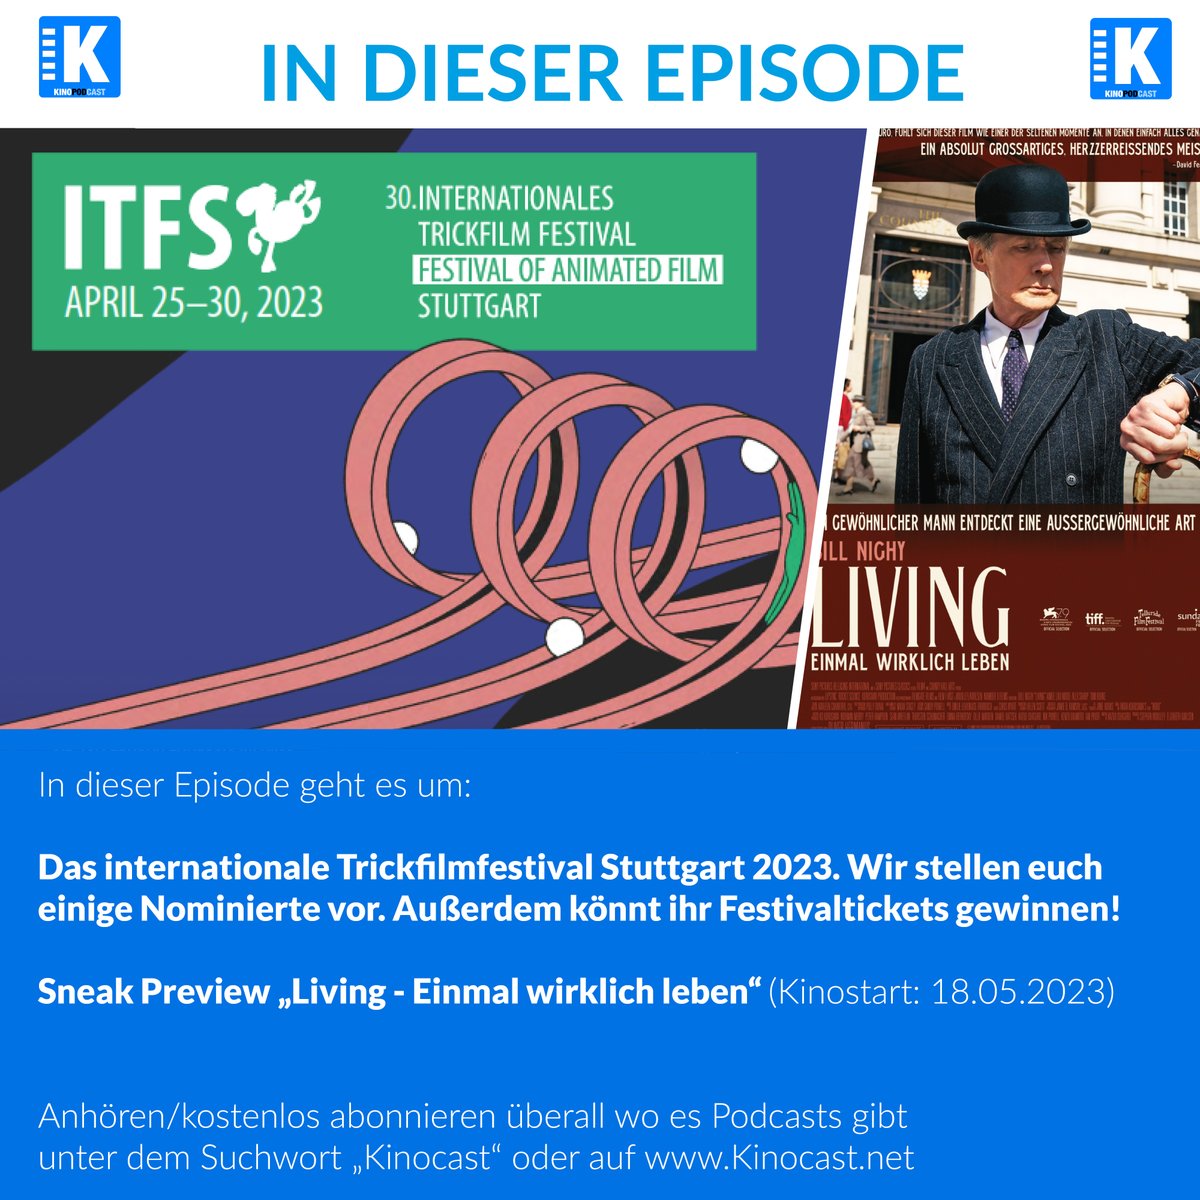 Neue Podcast Episode erschienen über das  'Internationale Trickfilmfestival 2023' Mit Gewinnspiel für Festivaltickets! Schnell mitmachen!
kinocast.net/podcast/itfs20… 

#Gewinnspiel #Gewinn #ITFS2023 #ITFS #Podcast #Deutsch #Kino #Film #animation #animation3d